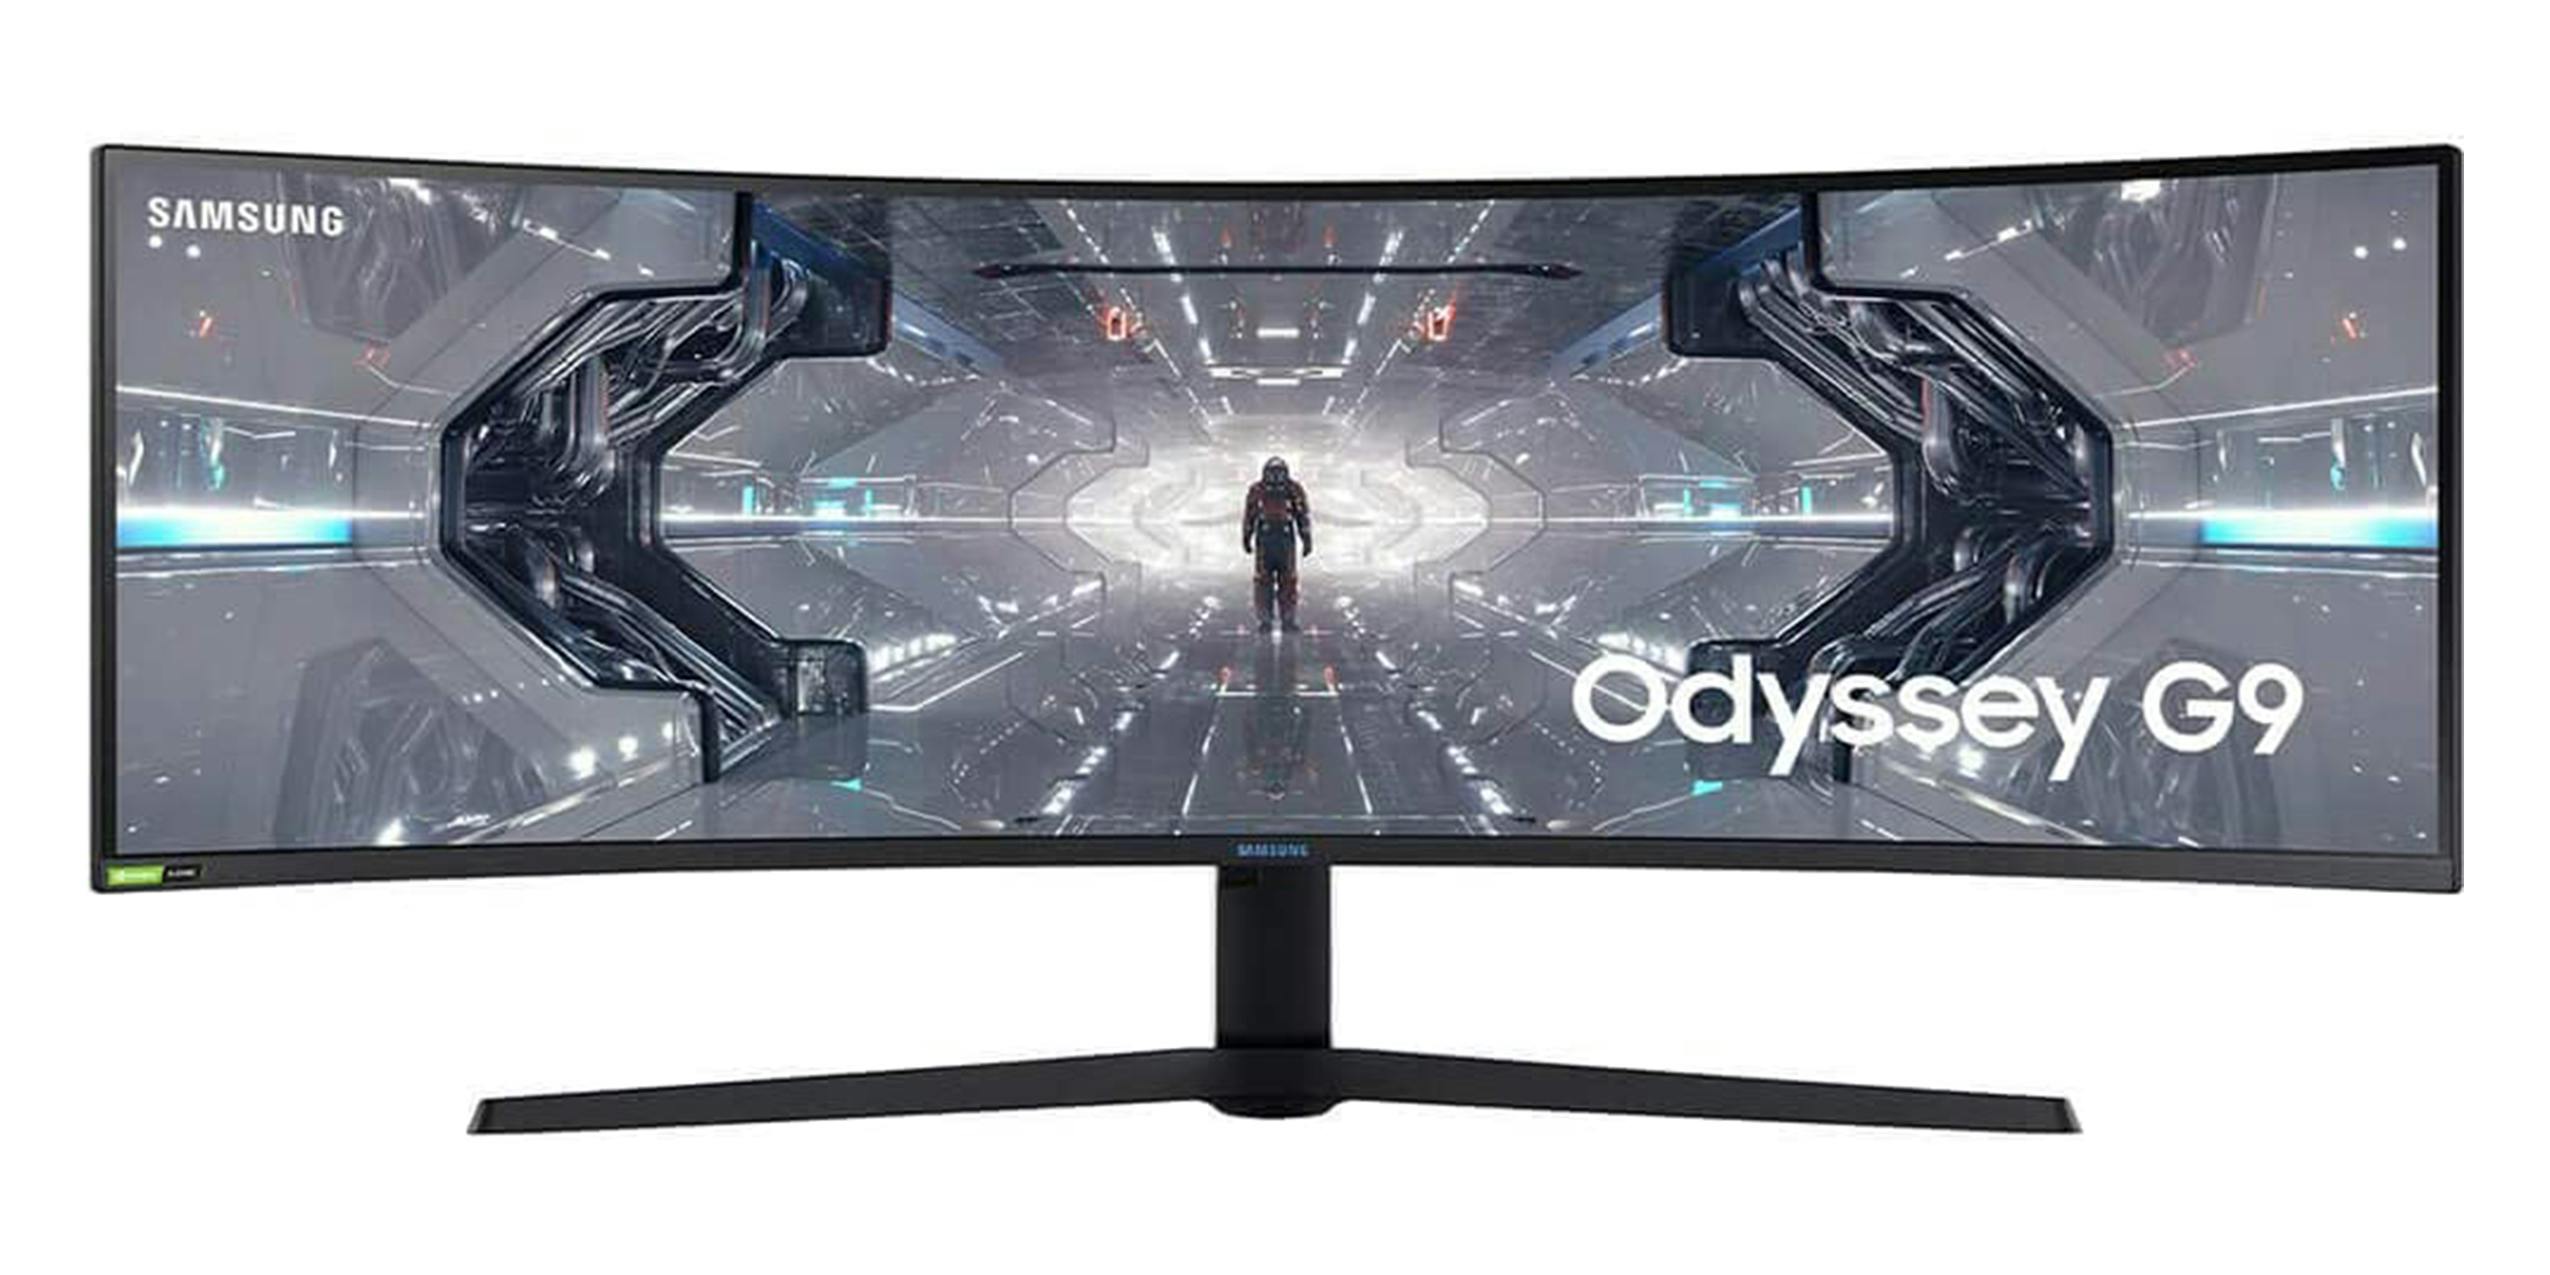 A Samsung 49ich Odyssey G9 computer monitor.